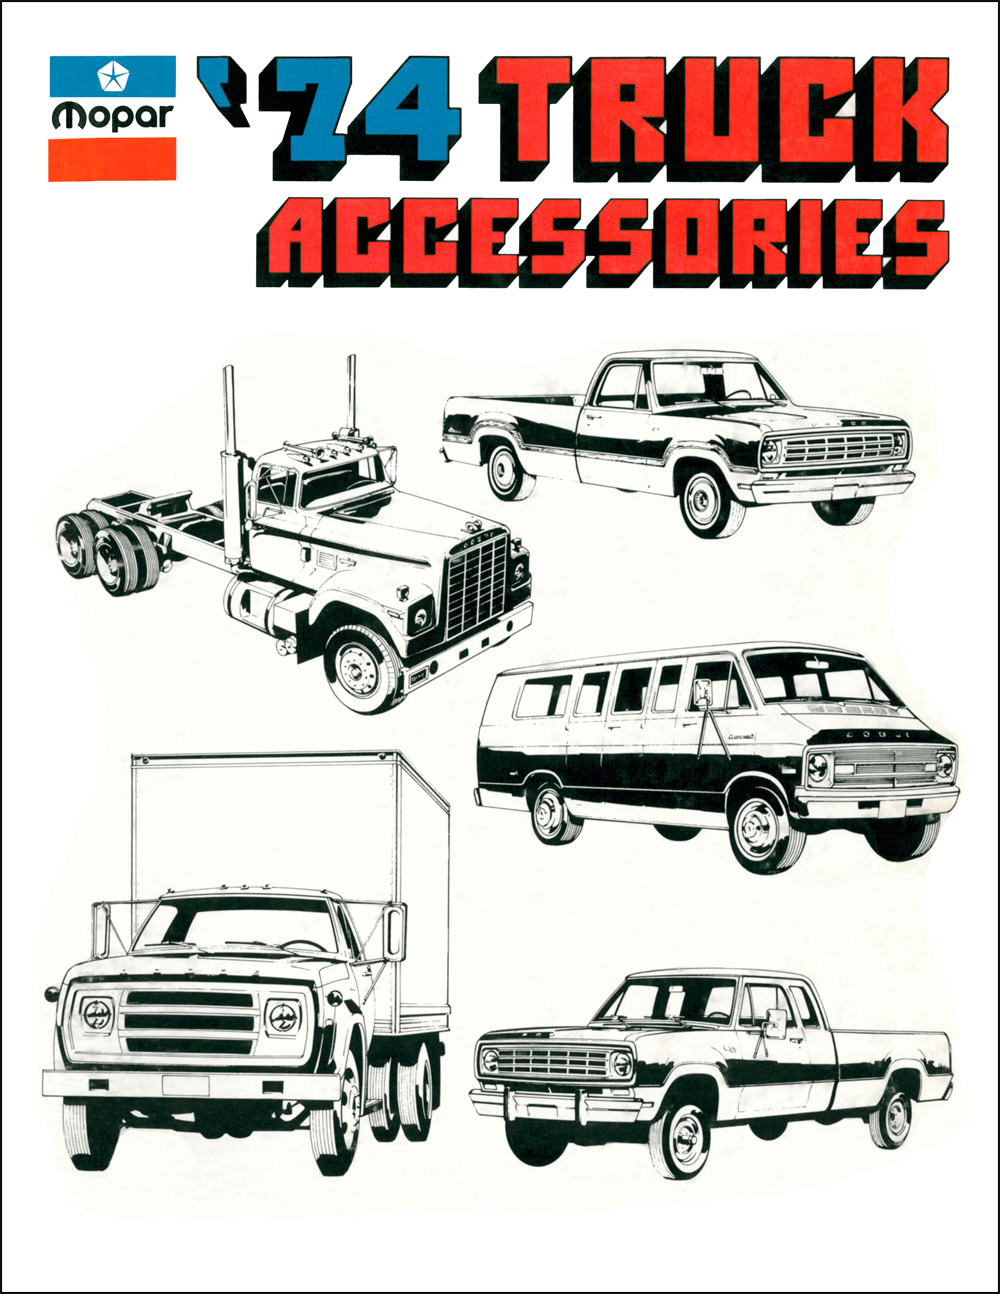 1974 Dodge Truck Accessories Parts Book Reprint